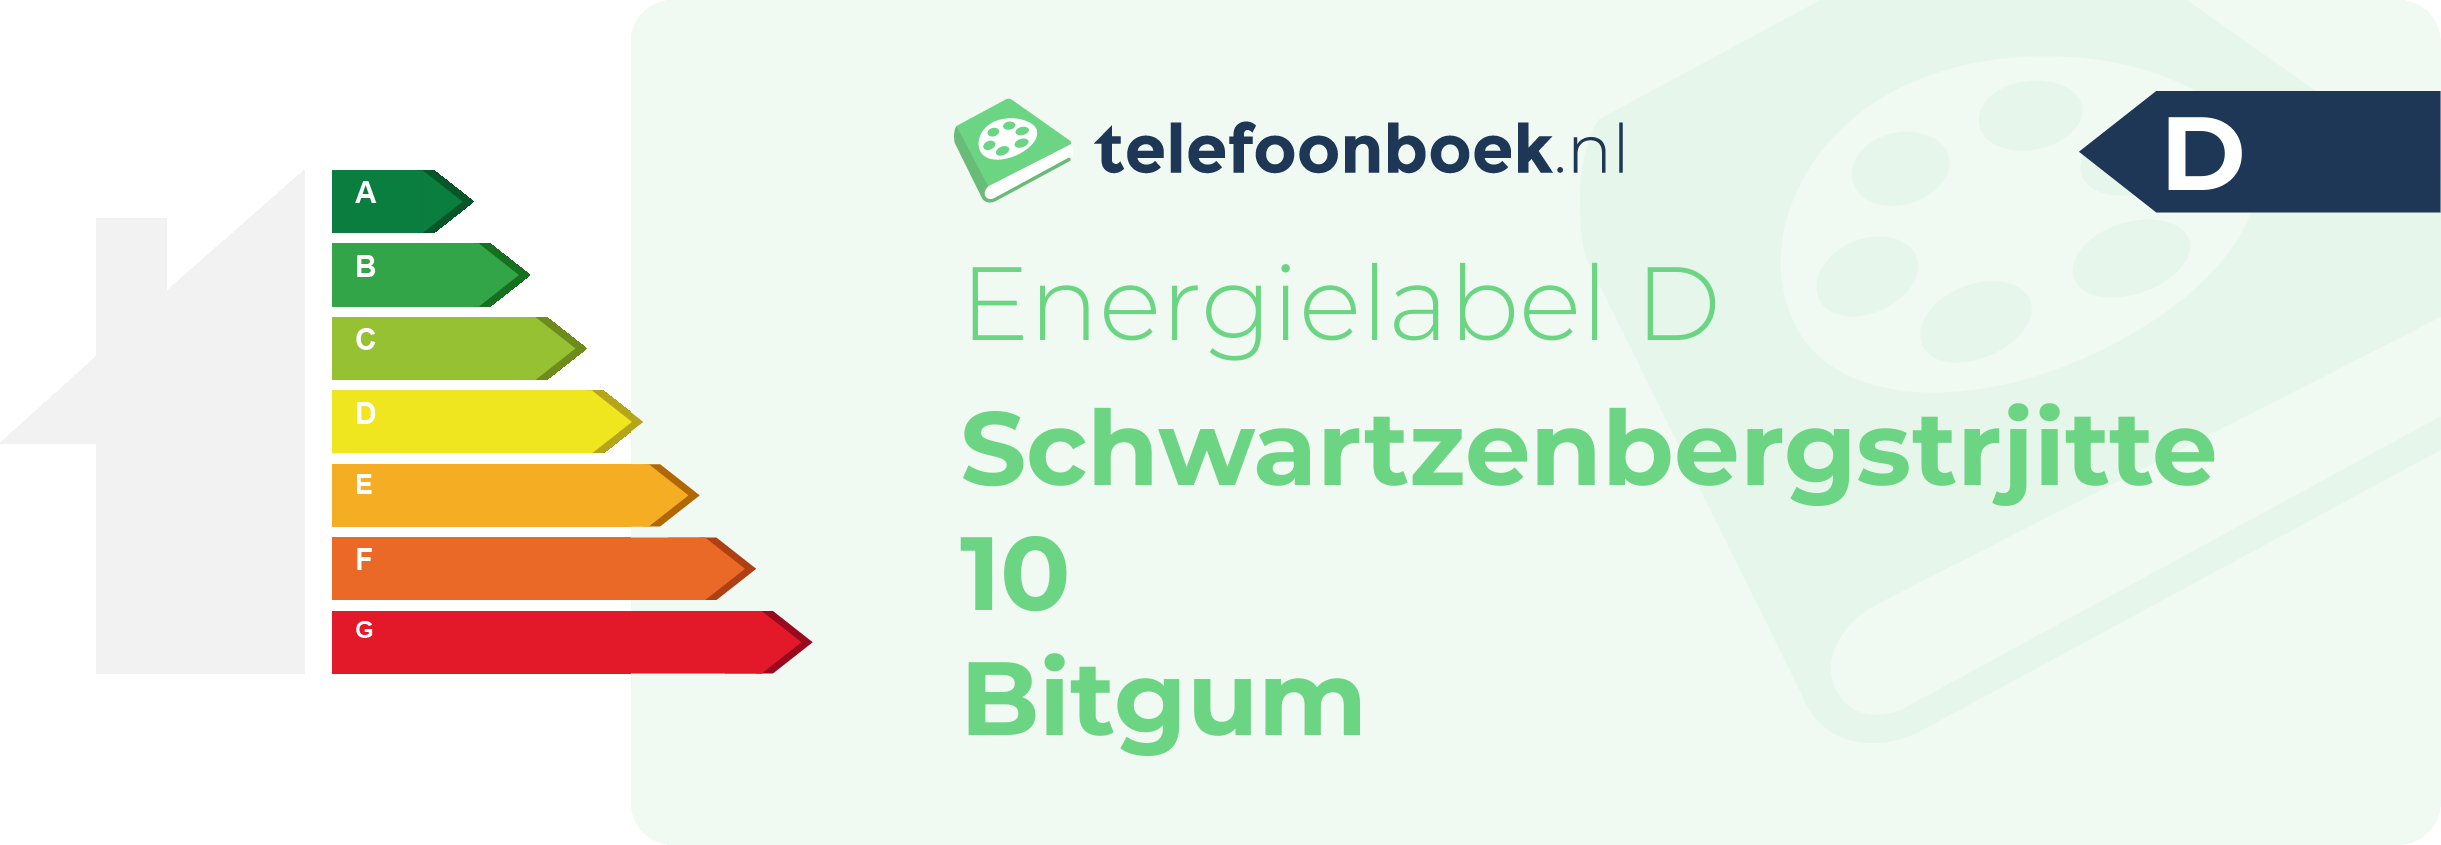 Energielabel Schwartzenbergstrjitte 10 Bitgum